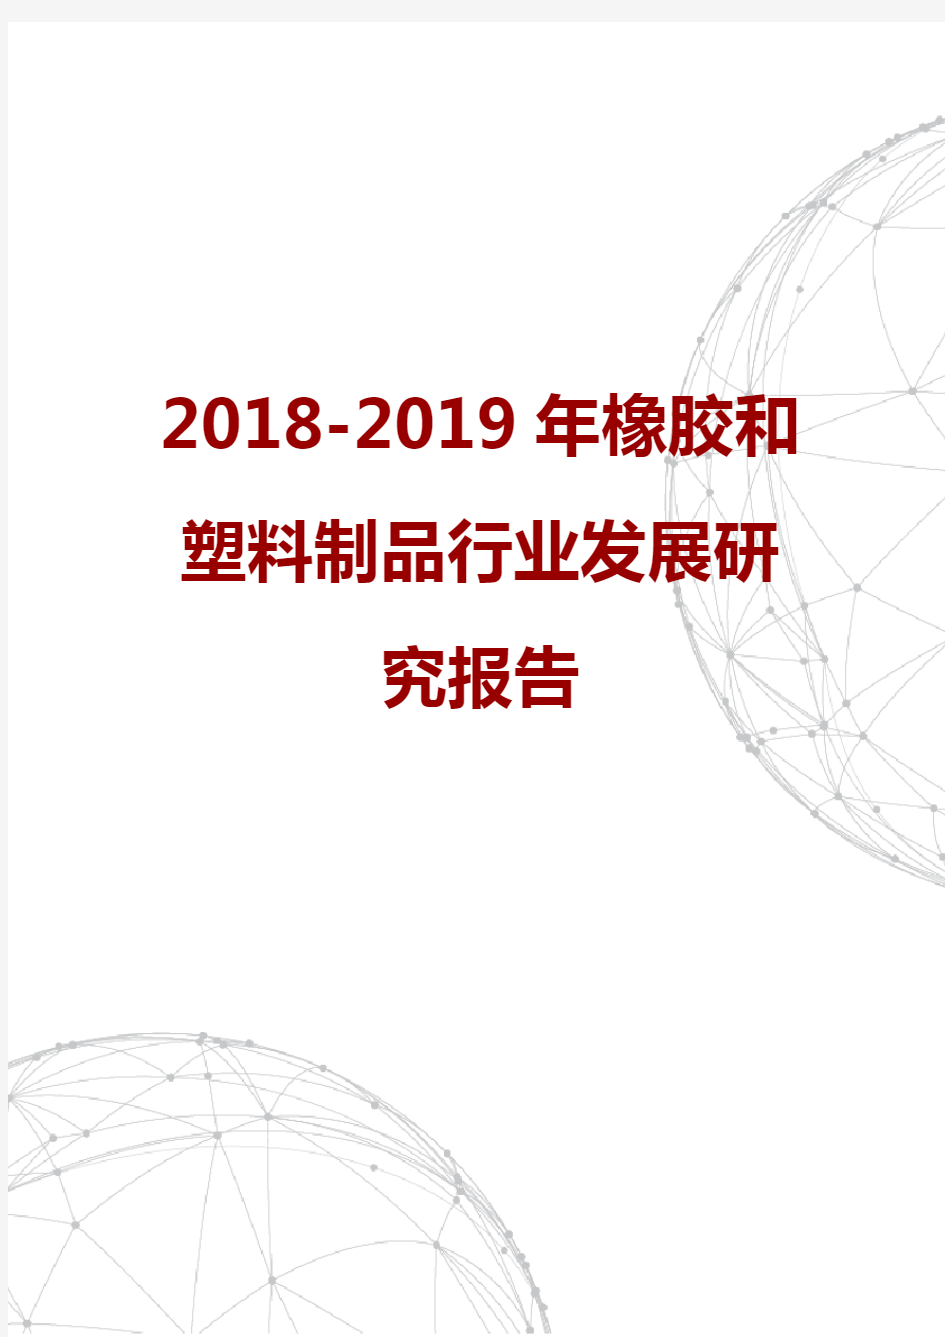 2018-2019年橡胶和塑料制品行业发展研究报告